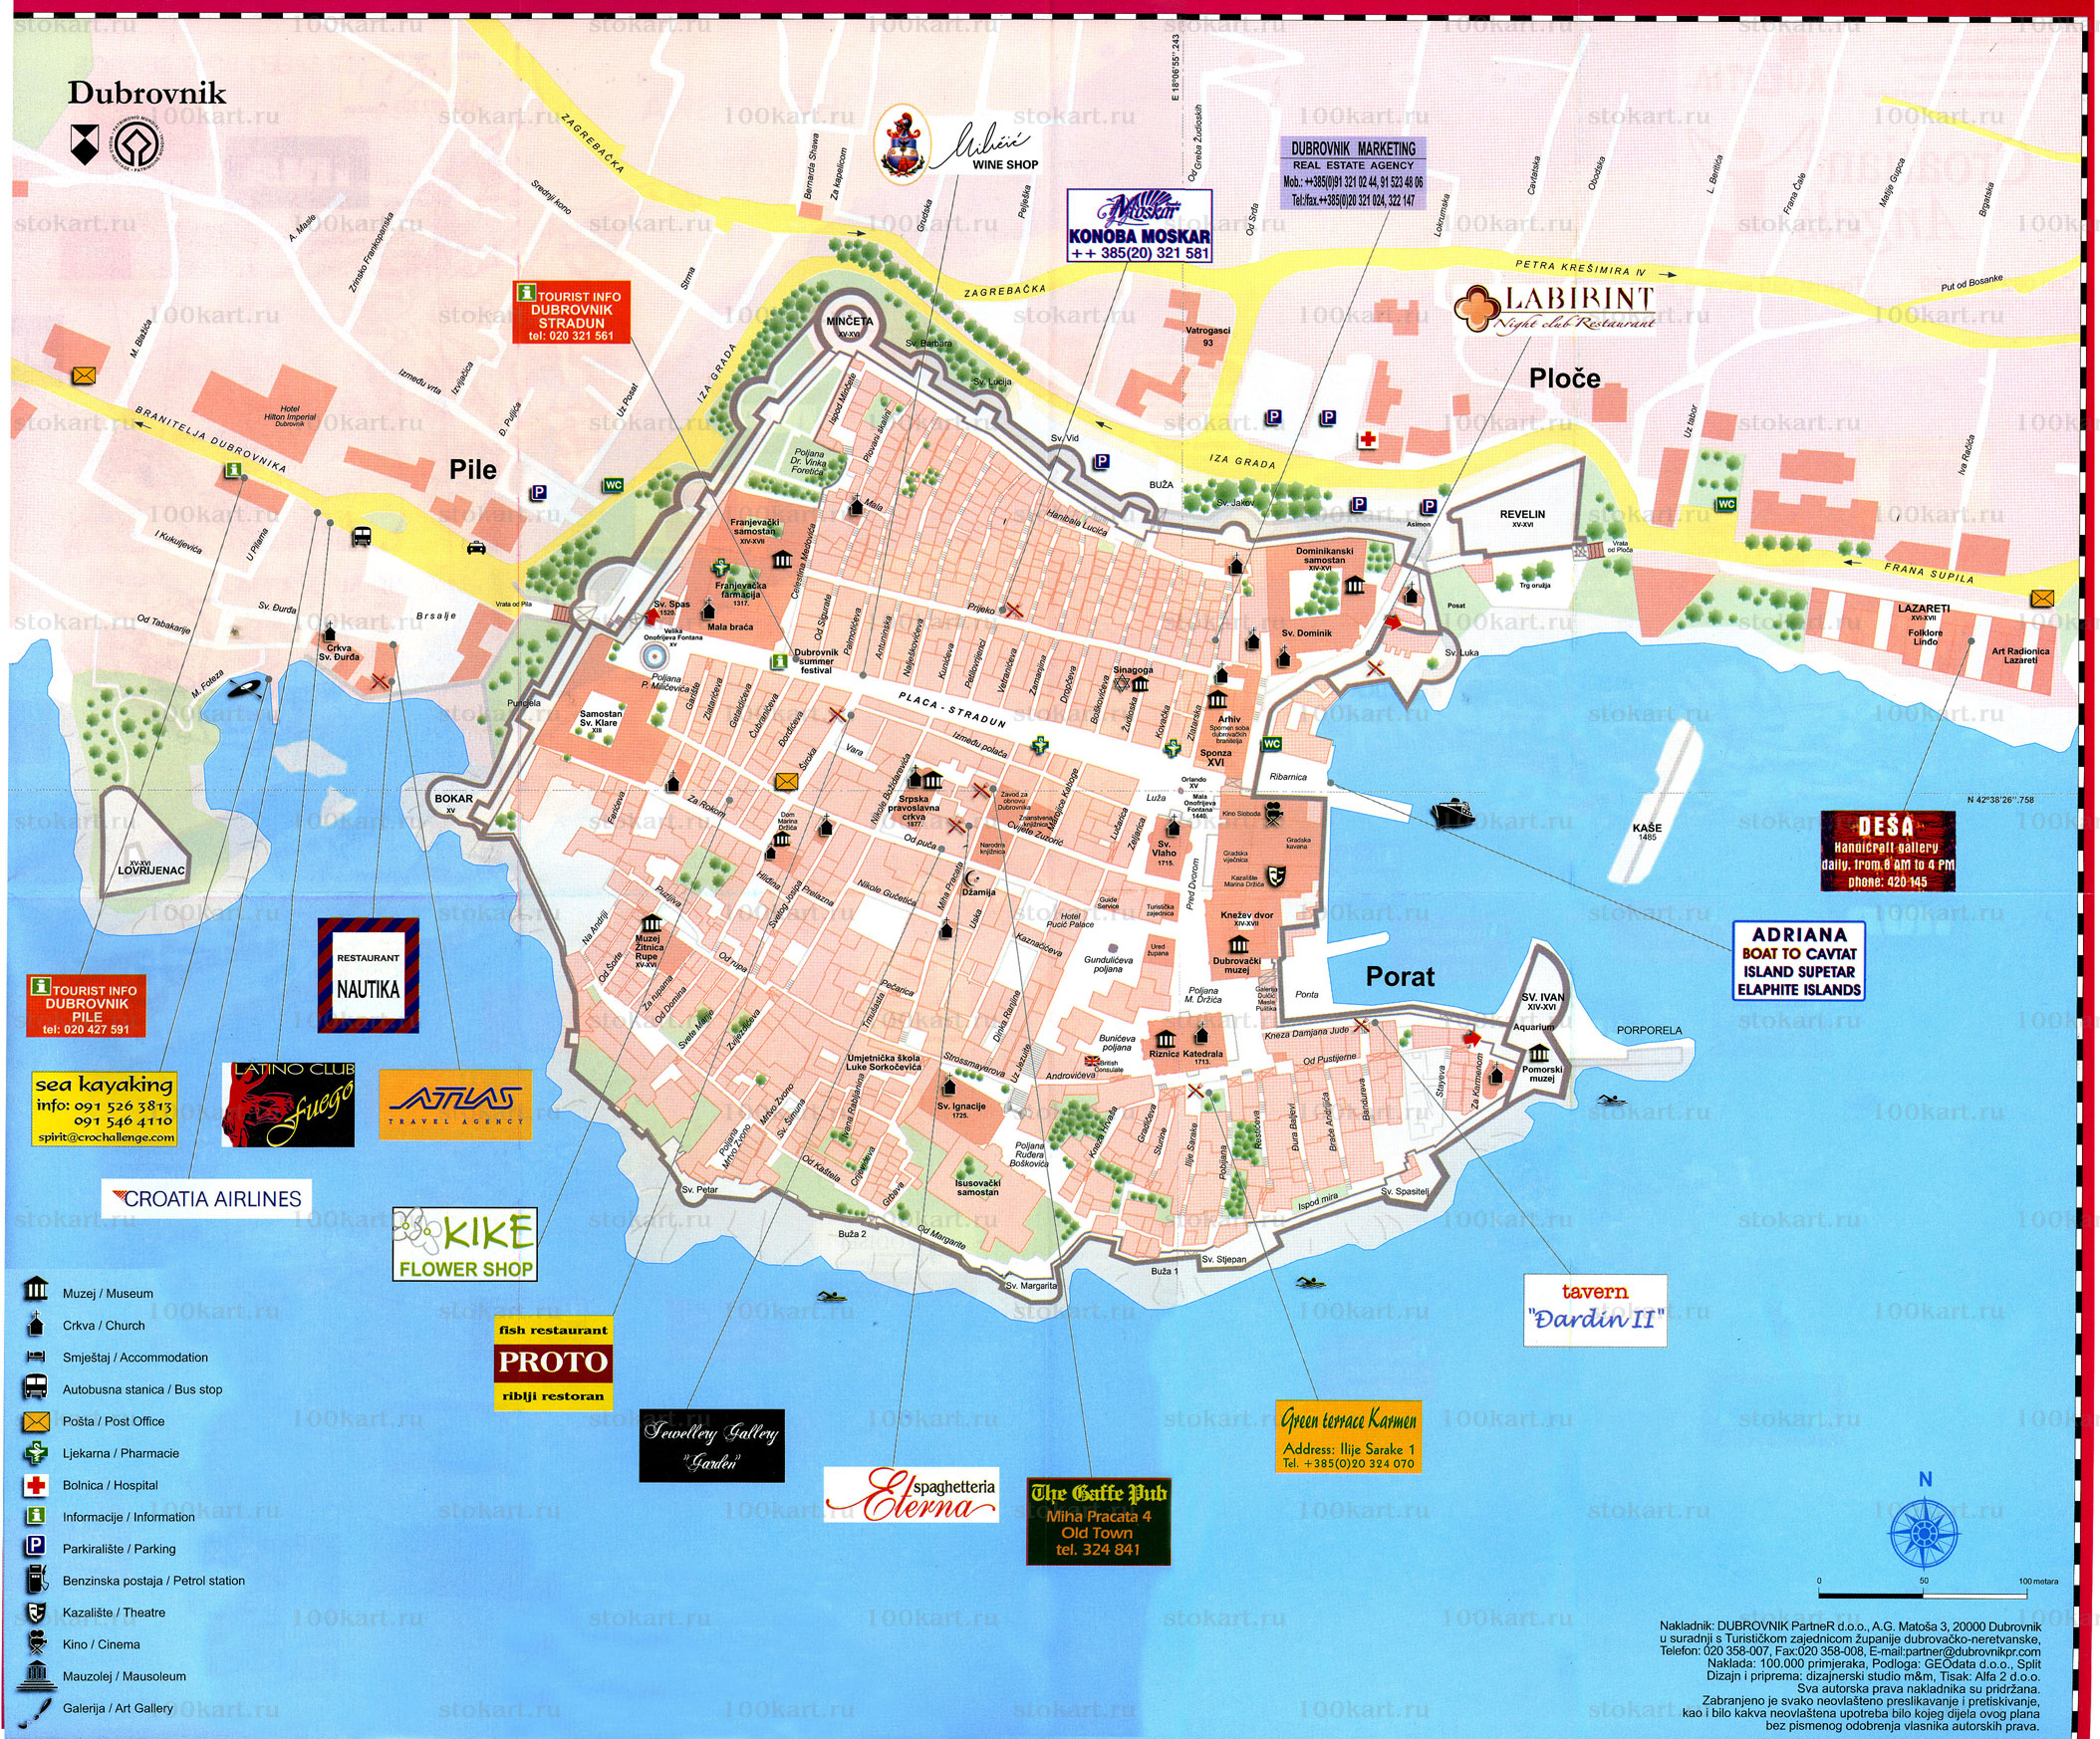 Dubrovnik Map Dubrovnik Mappery